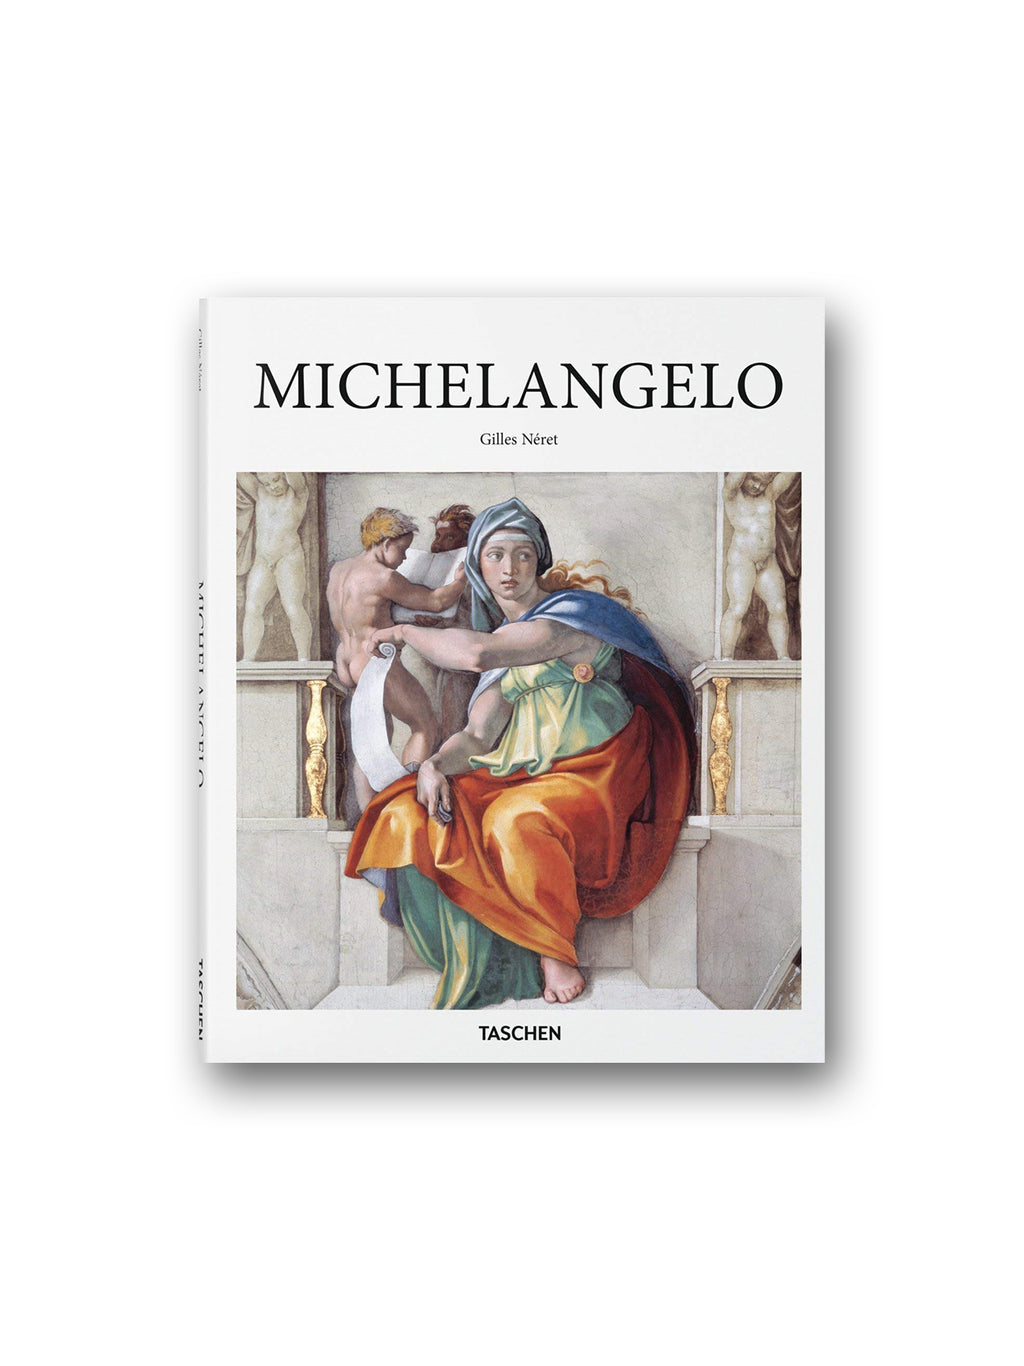 Michelangelo - Taschen Basic Art Series